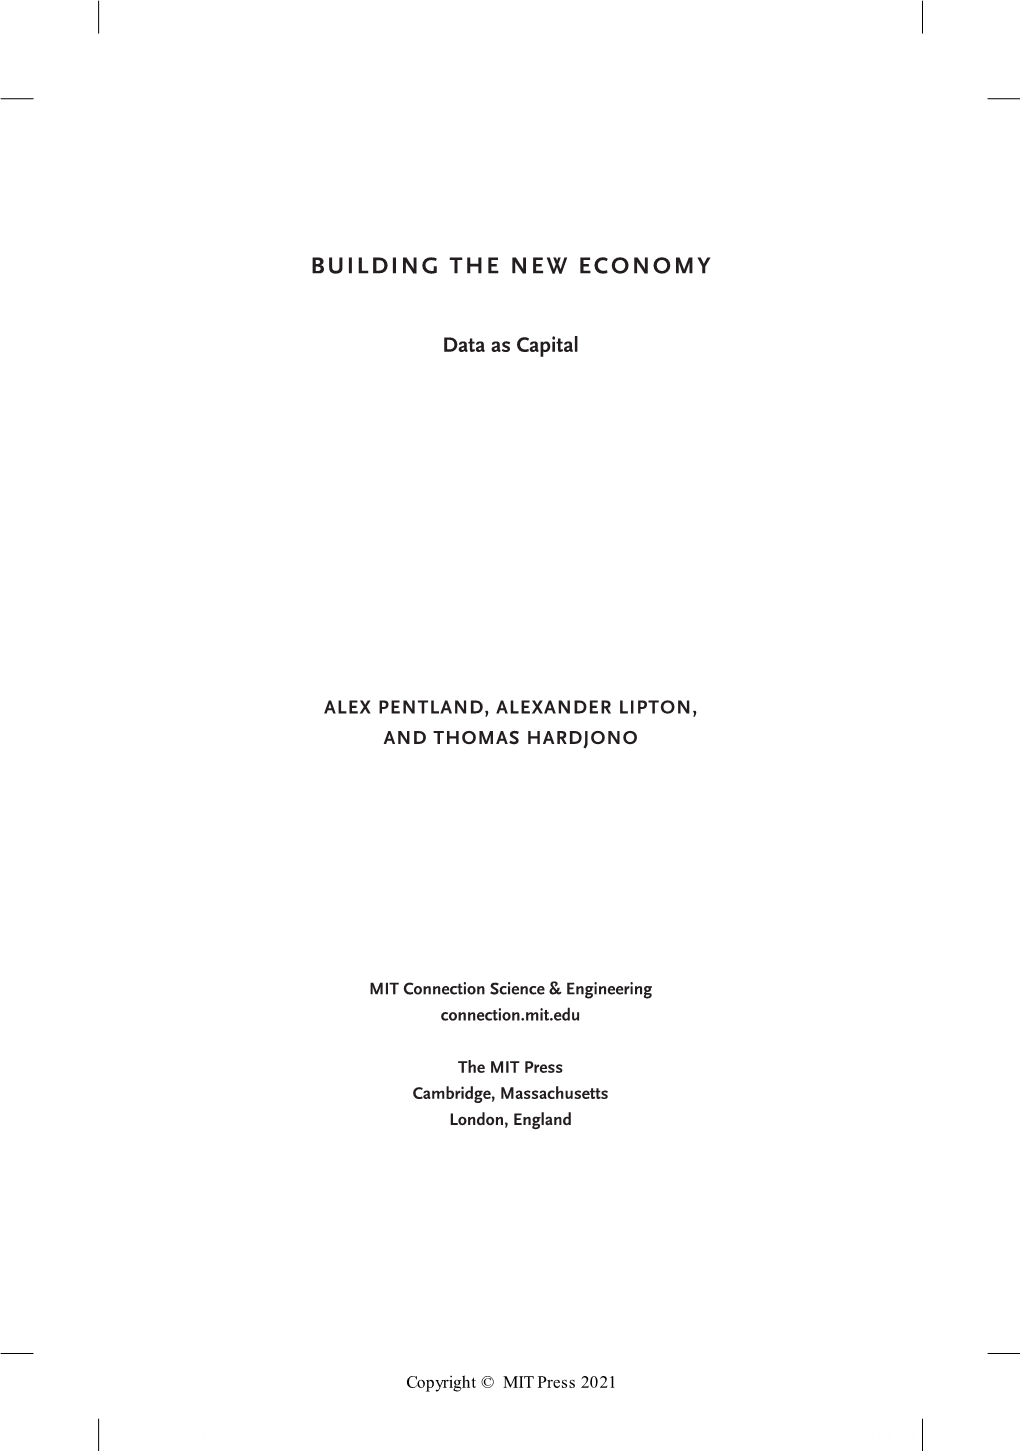 Building the New Economy